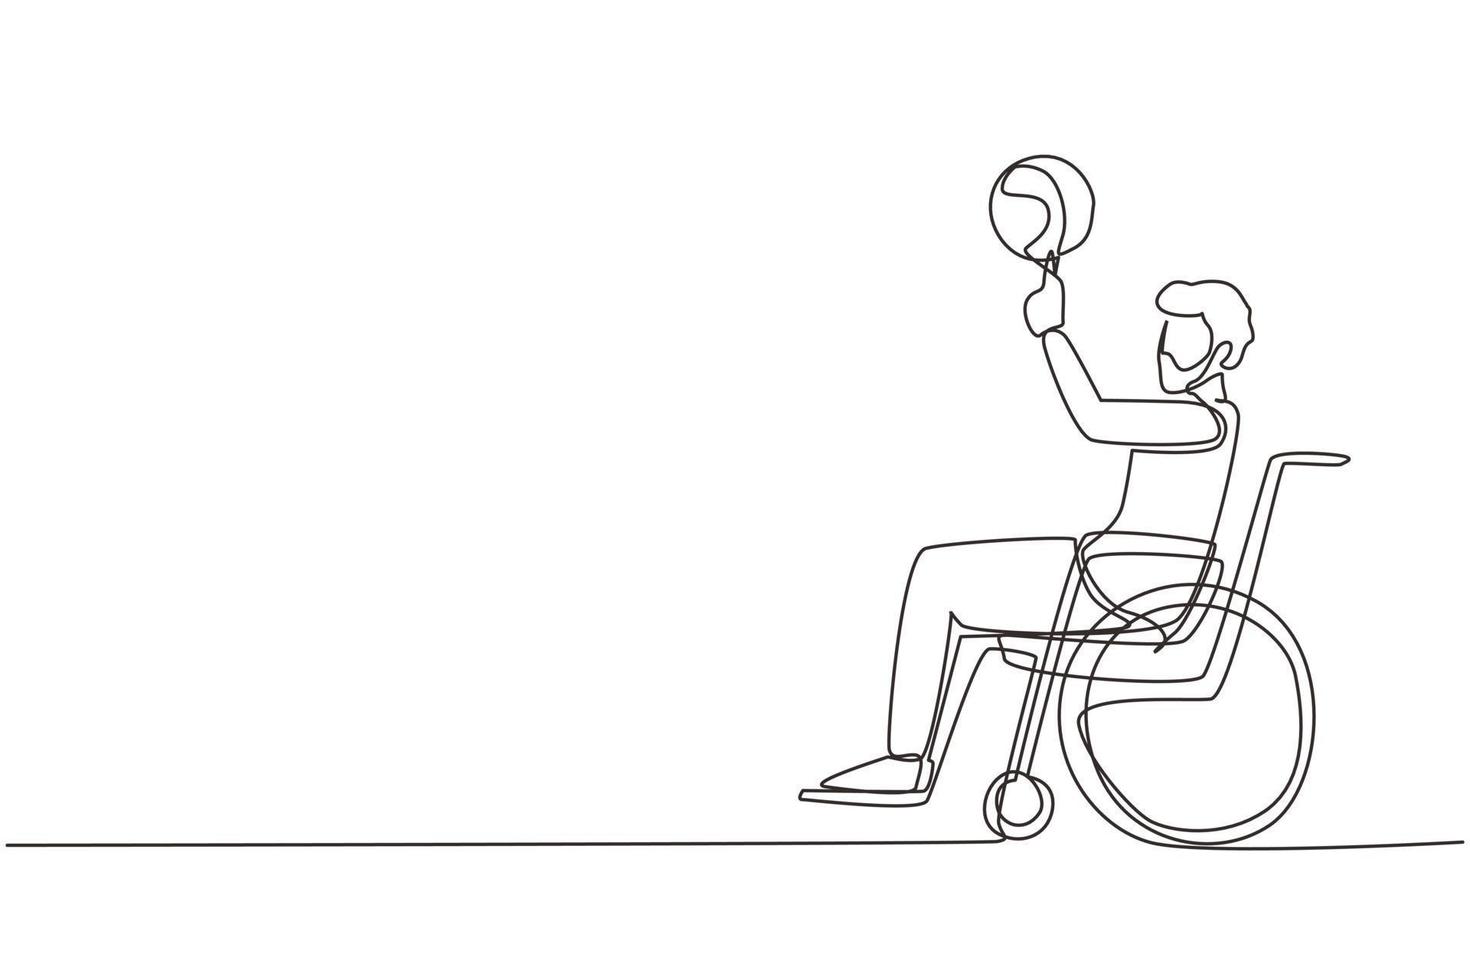 einzelne durchgehende strichzeichnung arabischer kerl im rollstuhl spielt basketball. Behinderte Person dreht Basketball auf seinem Finger. Bewegung für Menschen mit Behinderungen. eine Linie zeichnen Design-Vektor-Illustration vektor